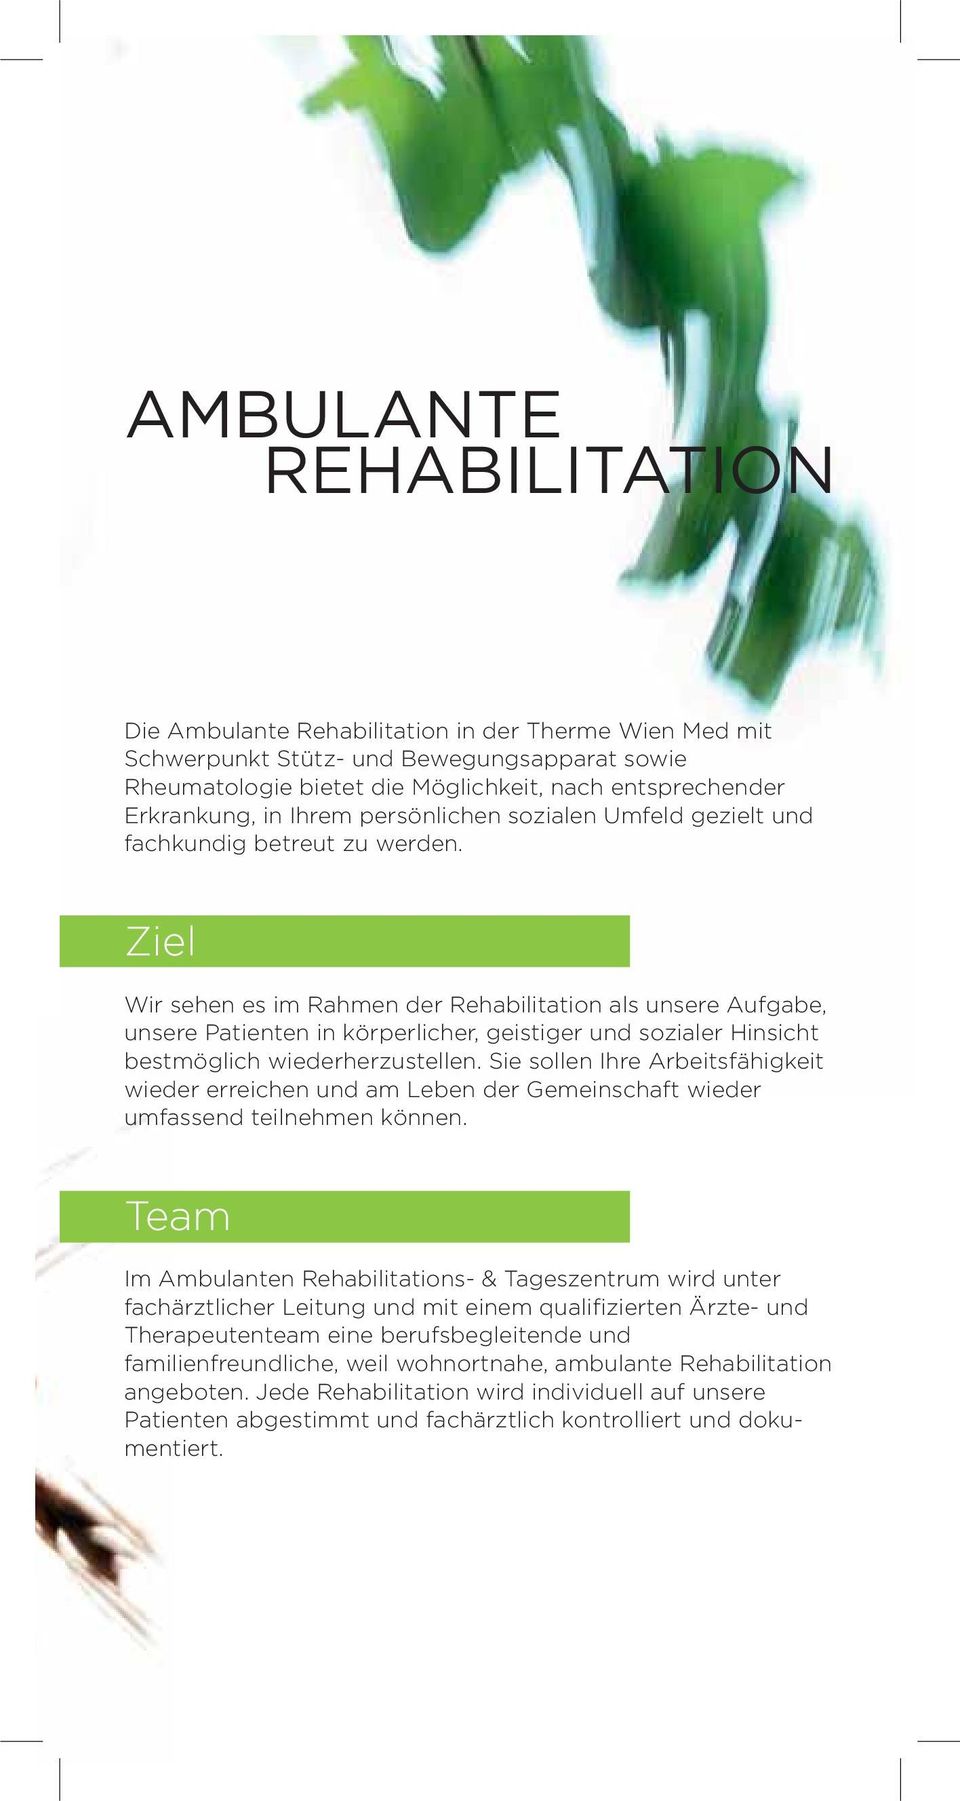 Ziel Wir sehen es im Rahmen der Rehabilitation als unsere Aufgabe, unsere Patienten in körperlicher, geistiger und sozialer Hinsicht bestmöglich wiederherzustellen.